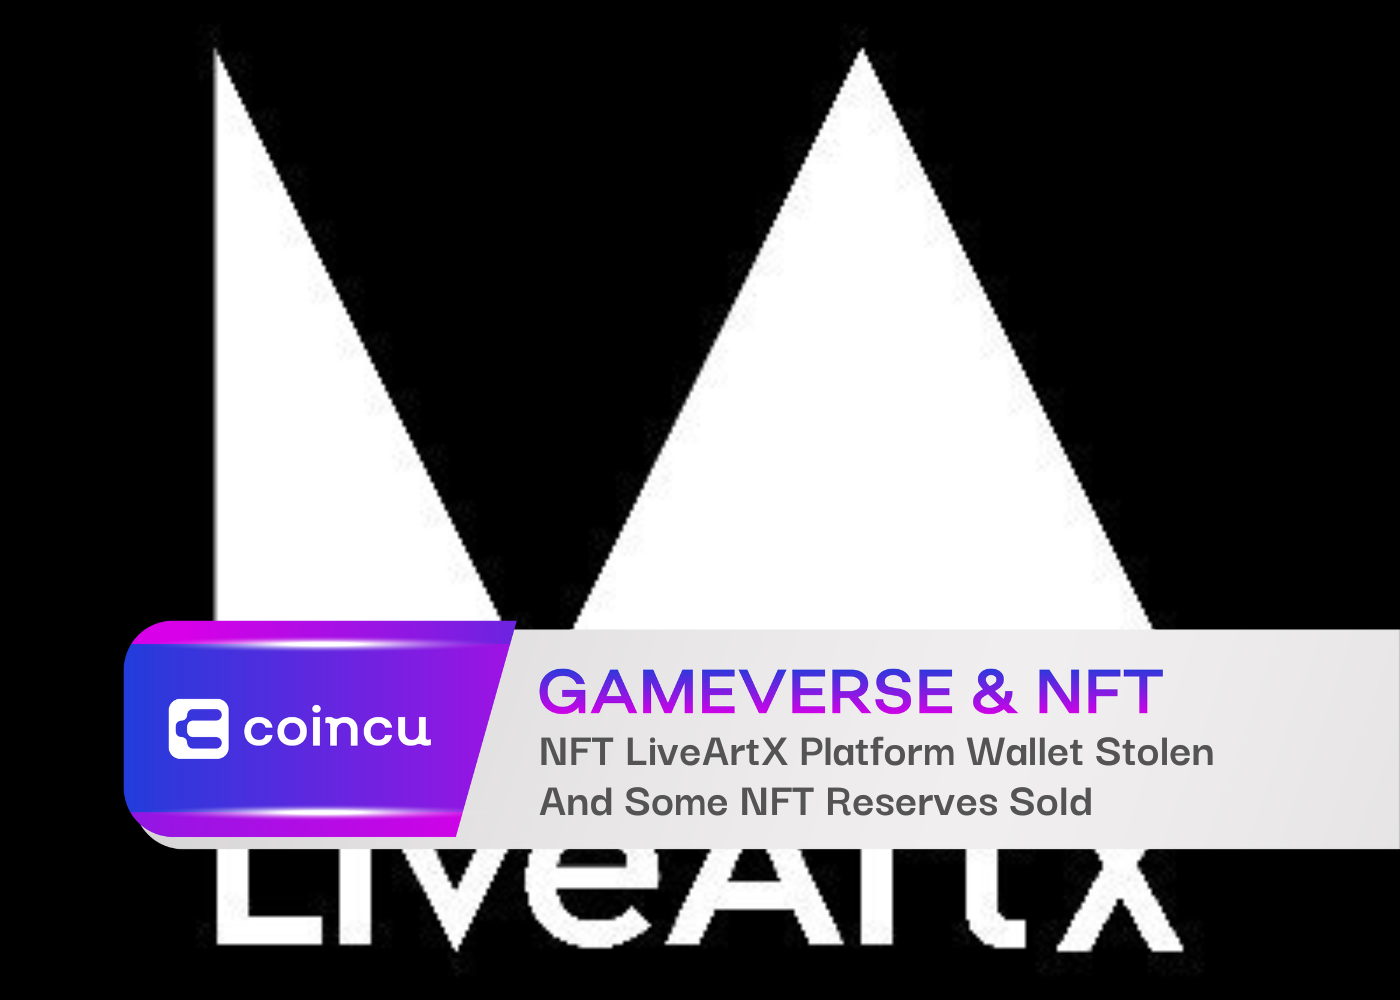 NFT LiveArtX Platform Wallet Stolen And Some NFT Reserves Sold